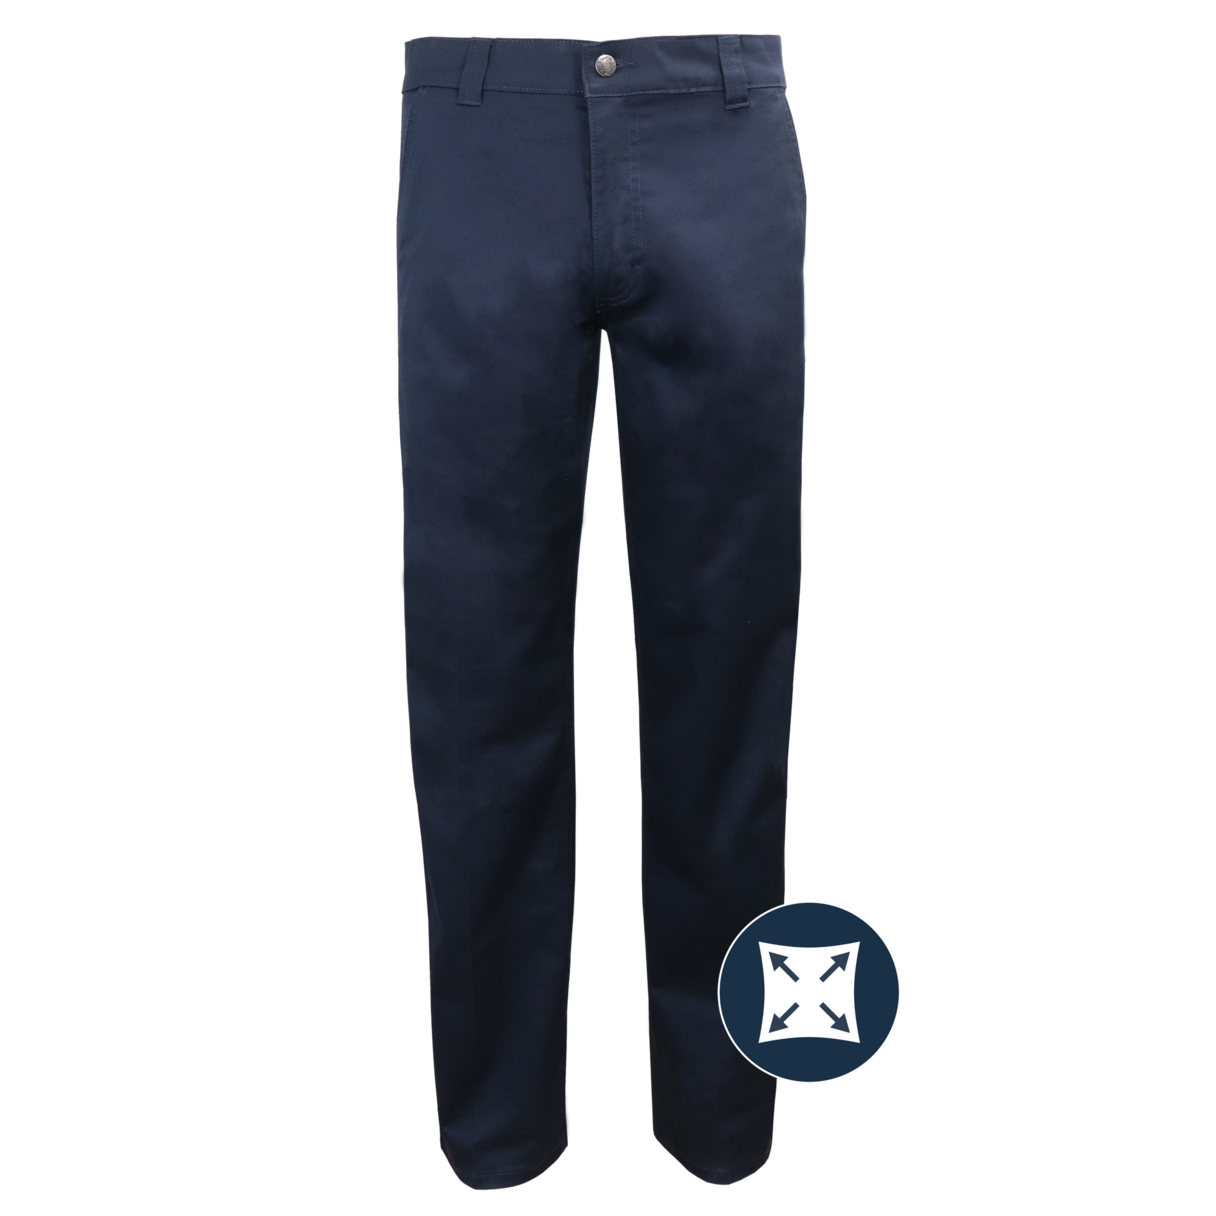 Pantalon de travail extensible pour homme Gatts #777EX marine